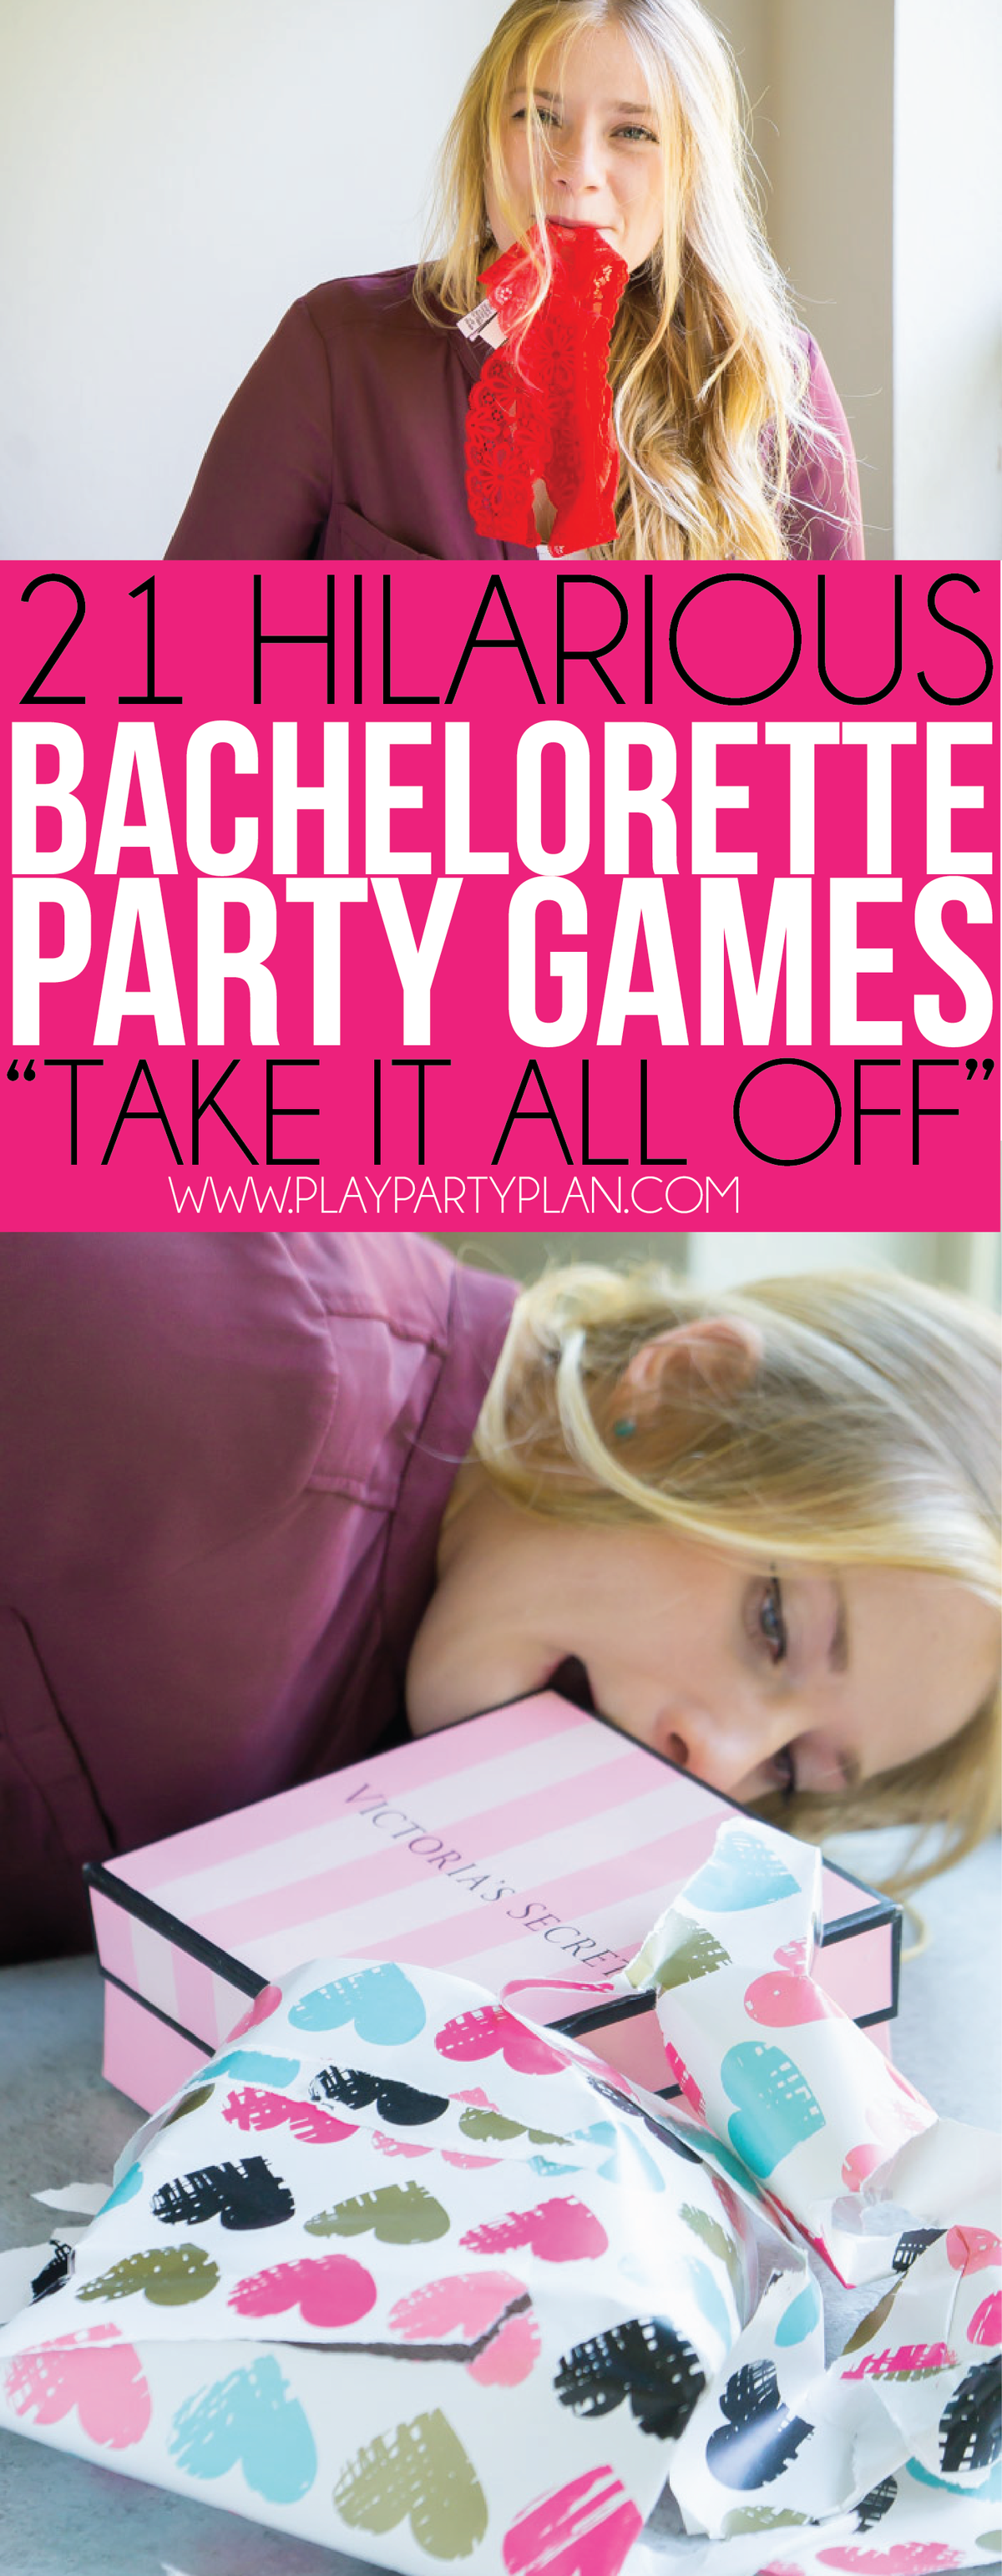 Vključite se v te zabavne igre bachelorette party